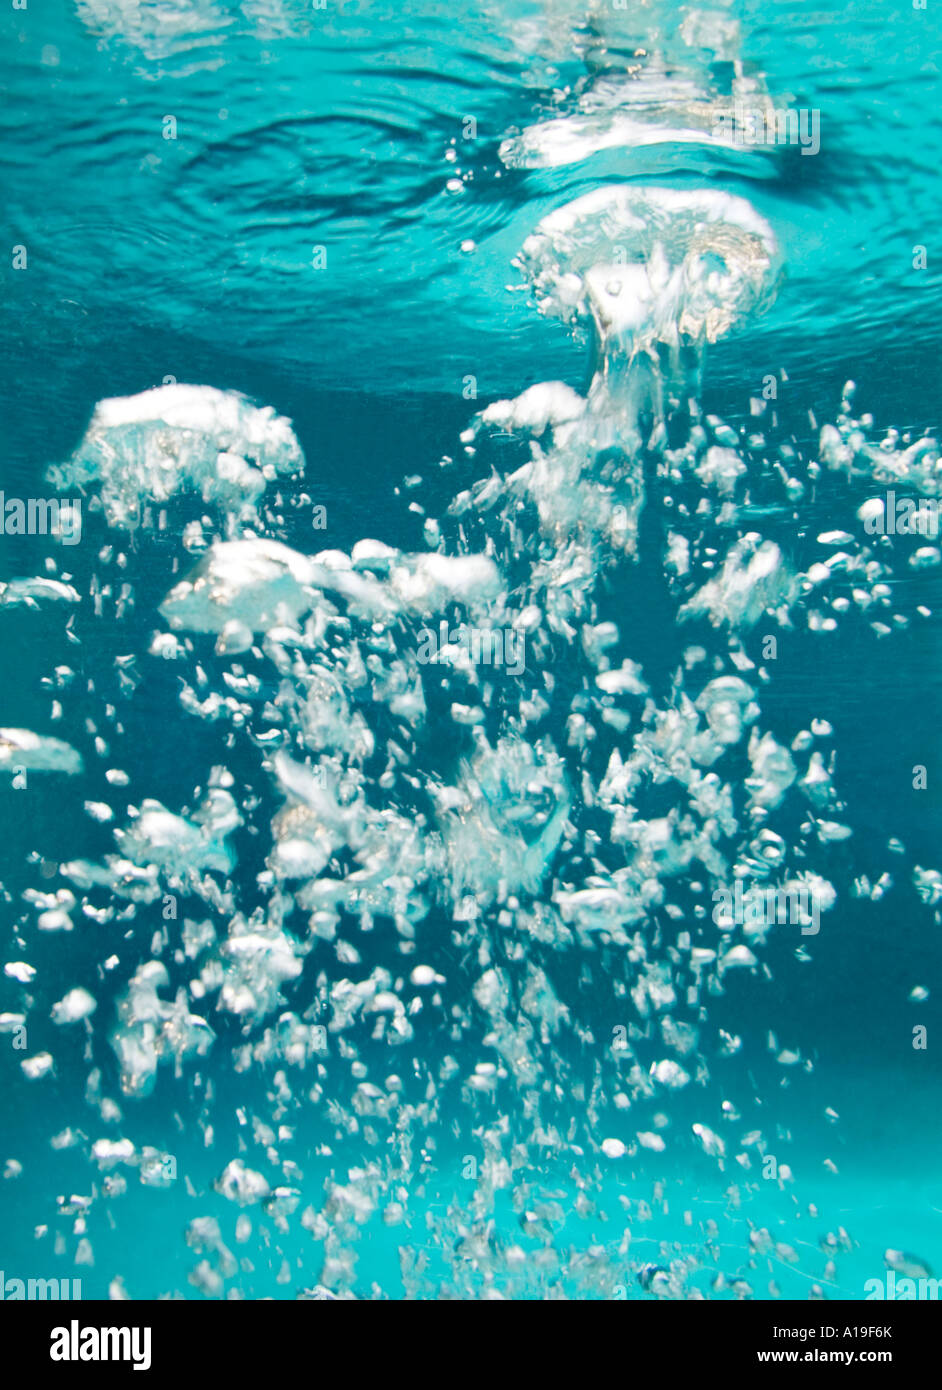 Luftblasen unter Wasser im Schwimmbad Stockfoto